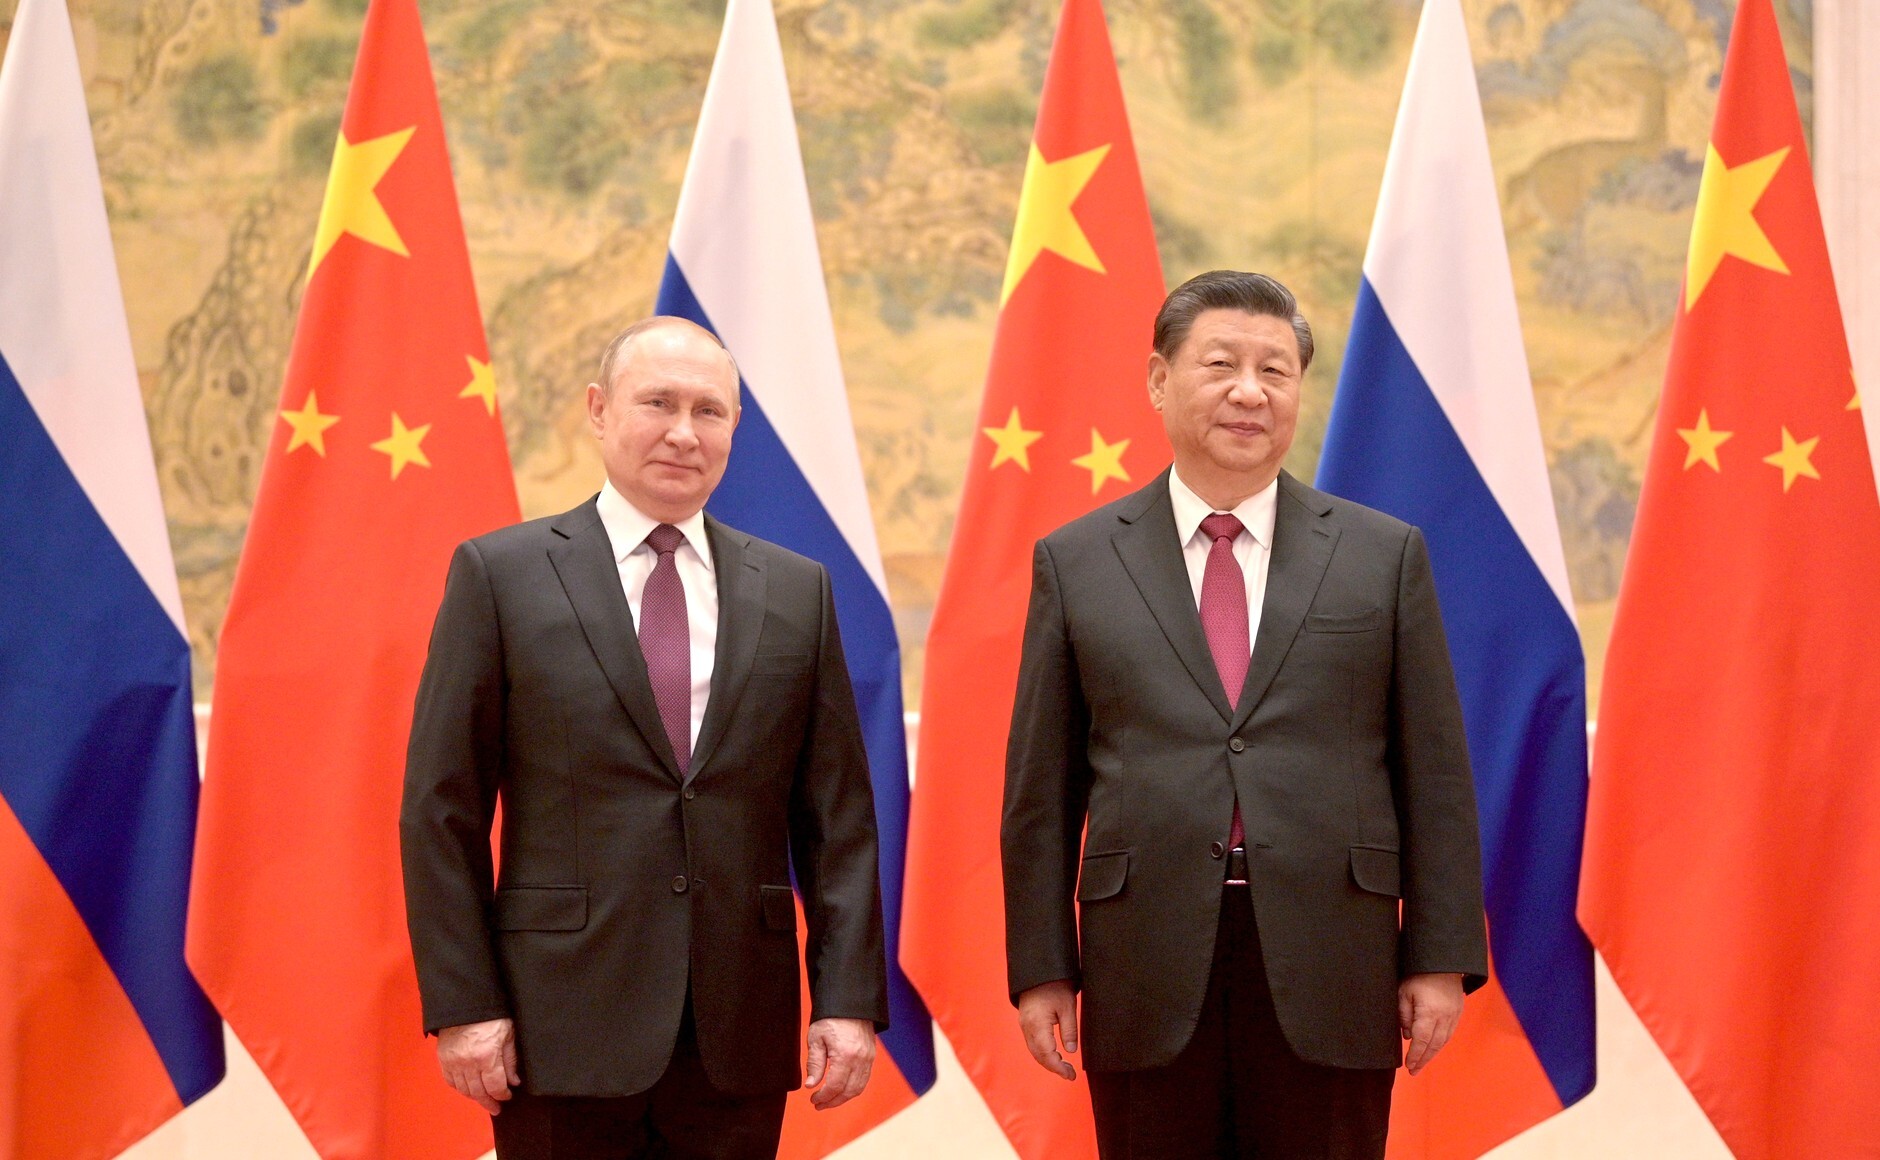 Краеугольный камень стабильности. Путин опубликовал статью об отношениях с Китаем накануне визита Си Цзиньпина